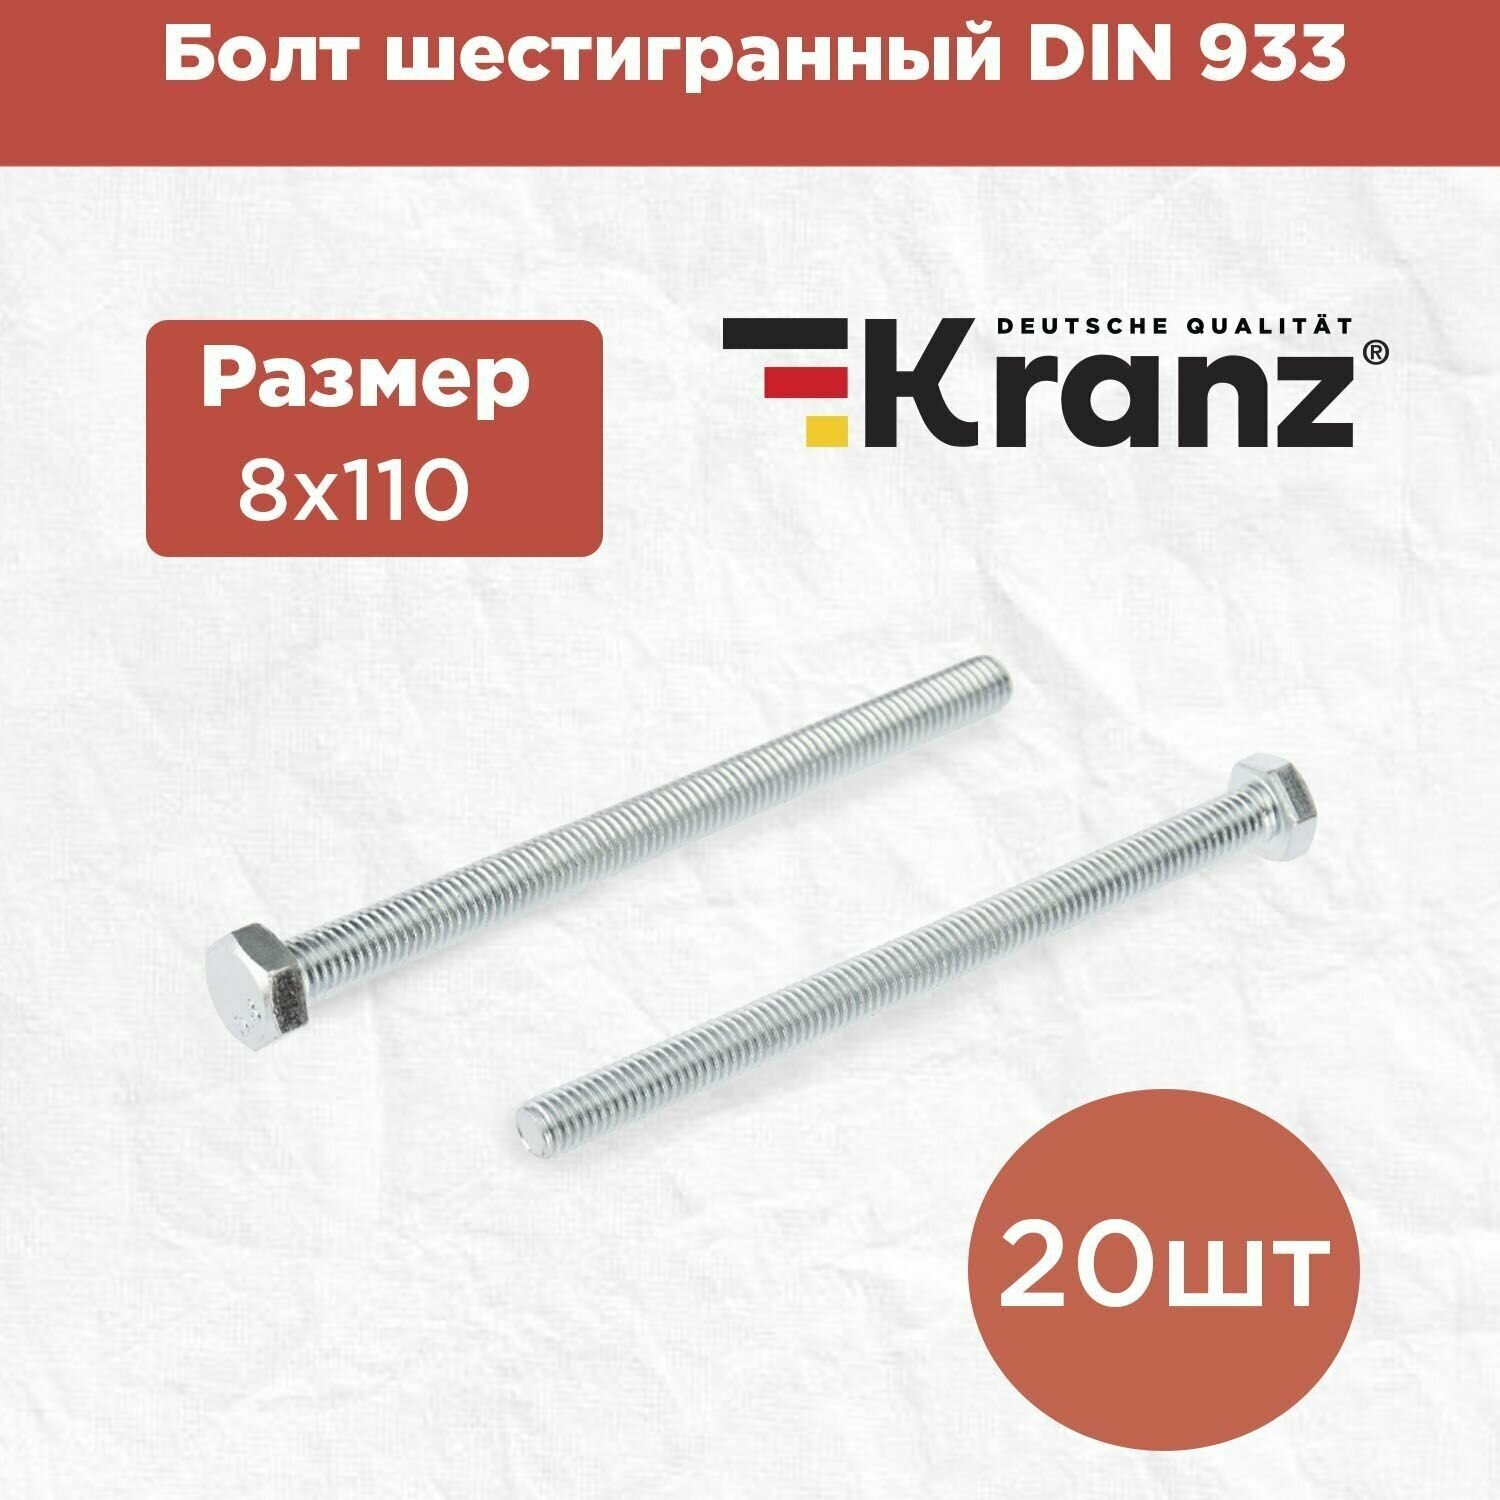 Болт шестигранный KRANZ стандарт DIN 933, 8х110, в упаковке 20 штук